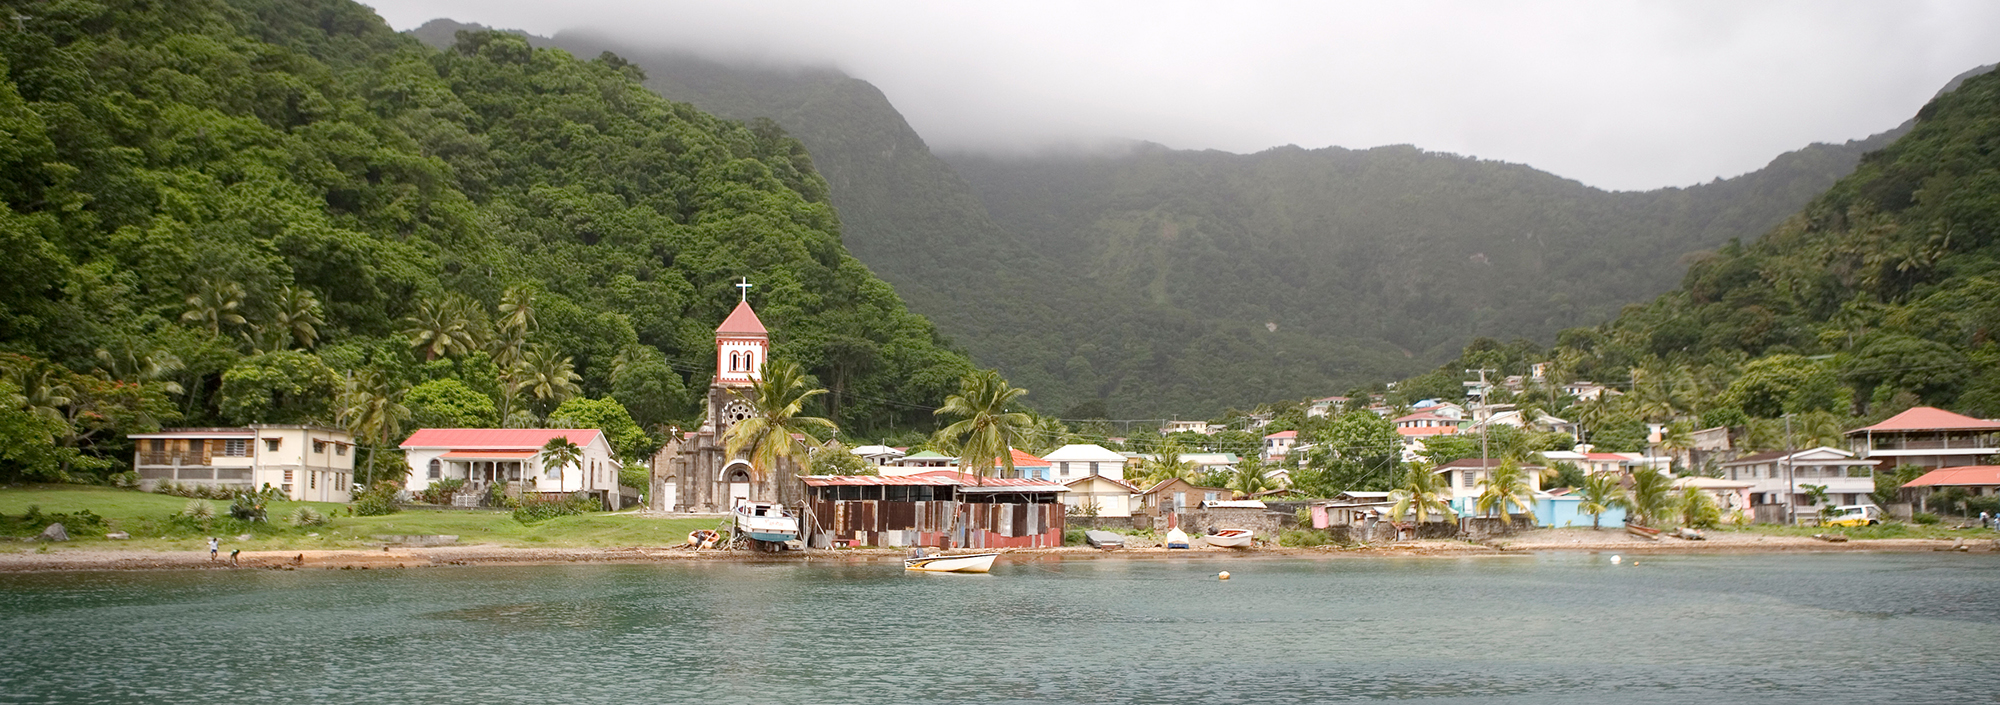 Kleiner Ort auf Dominica eingebettet in tropische Grün